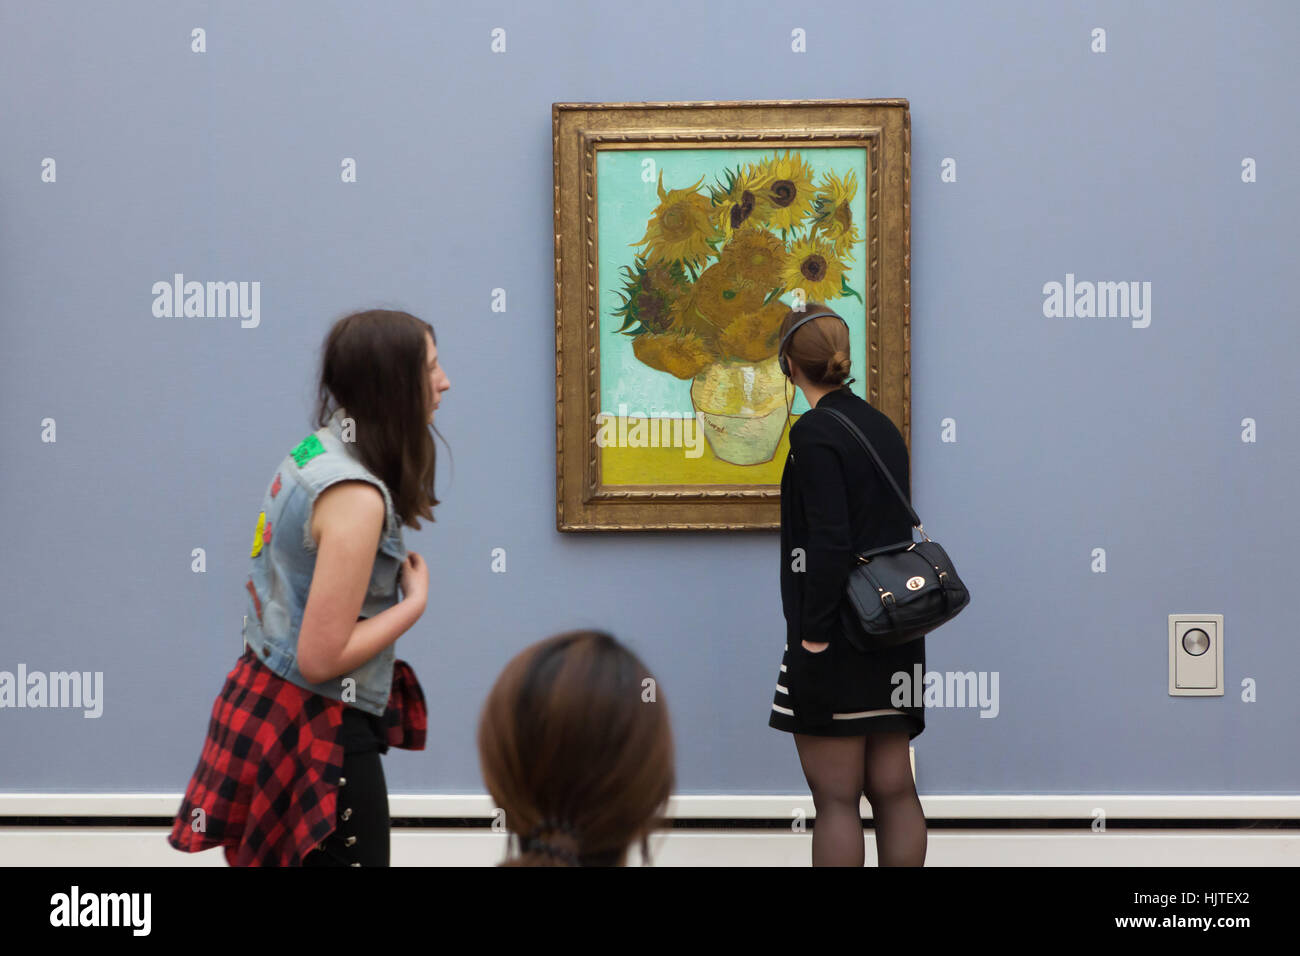 Visiteurs en face des peintures du tournesol (1888) par le peintre post-impressionniste Vincent van Gogh affiche dans la Neue Pinakothek (Nouveau Pinacotheca) à Munich, Bavière, Allemagne. Banque D'Images